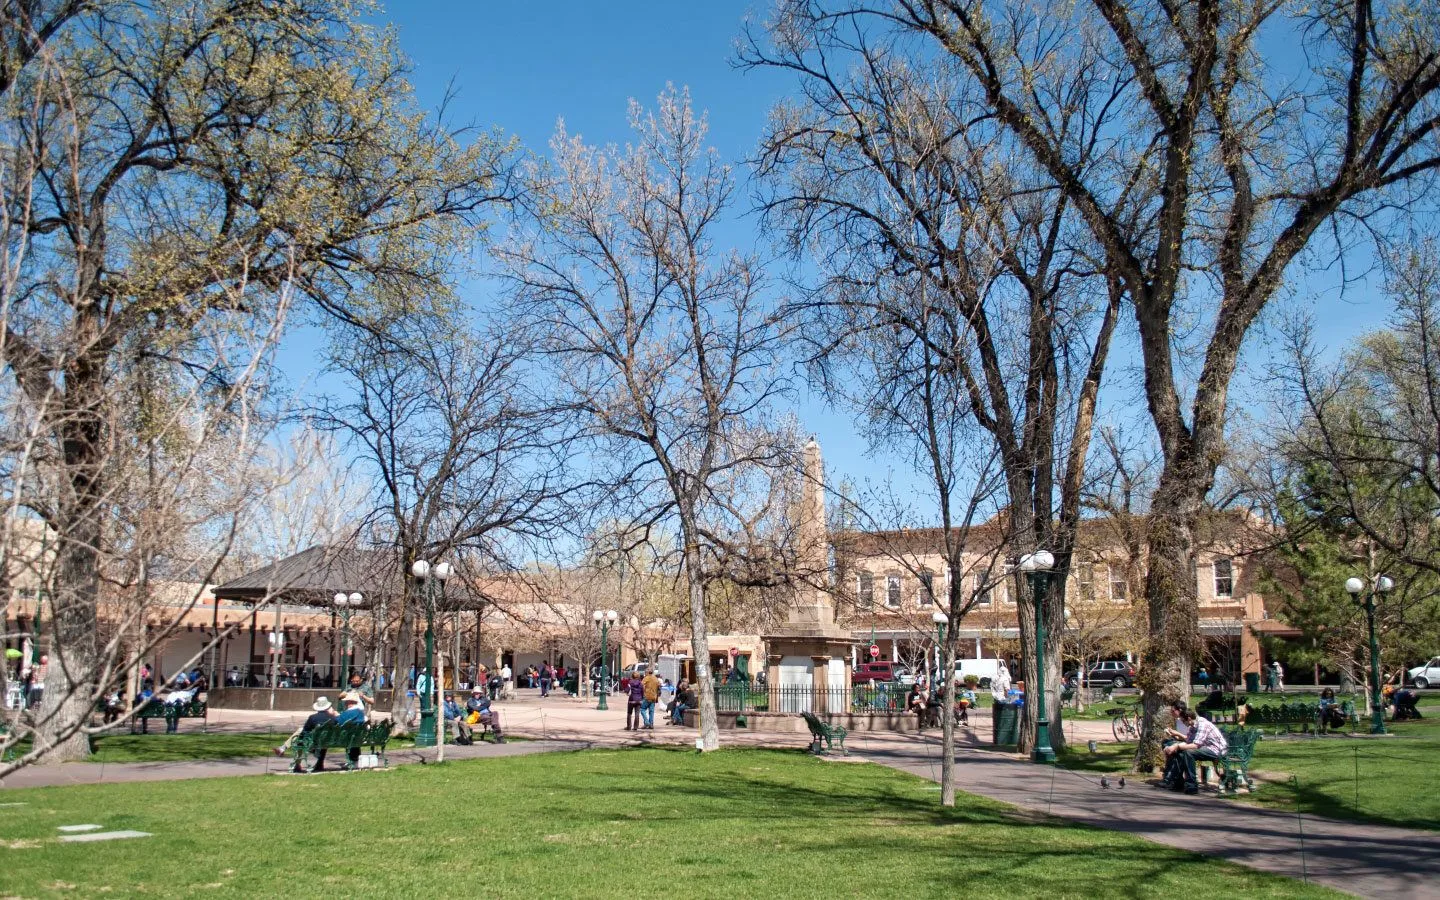 Santa Fe Plaza, New Mexico